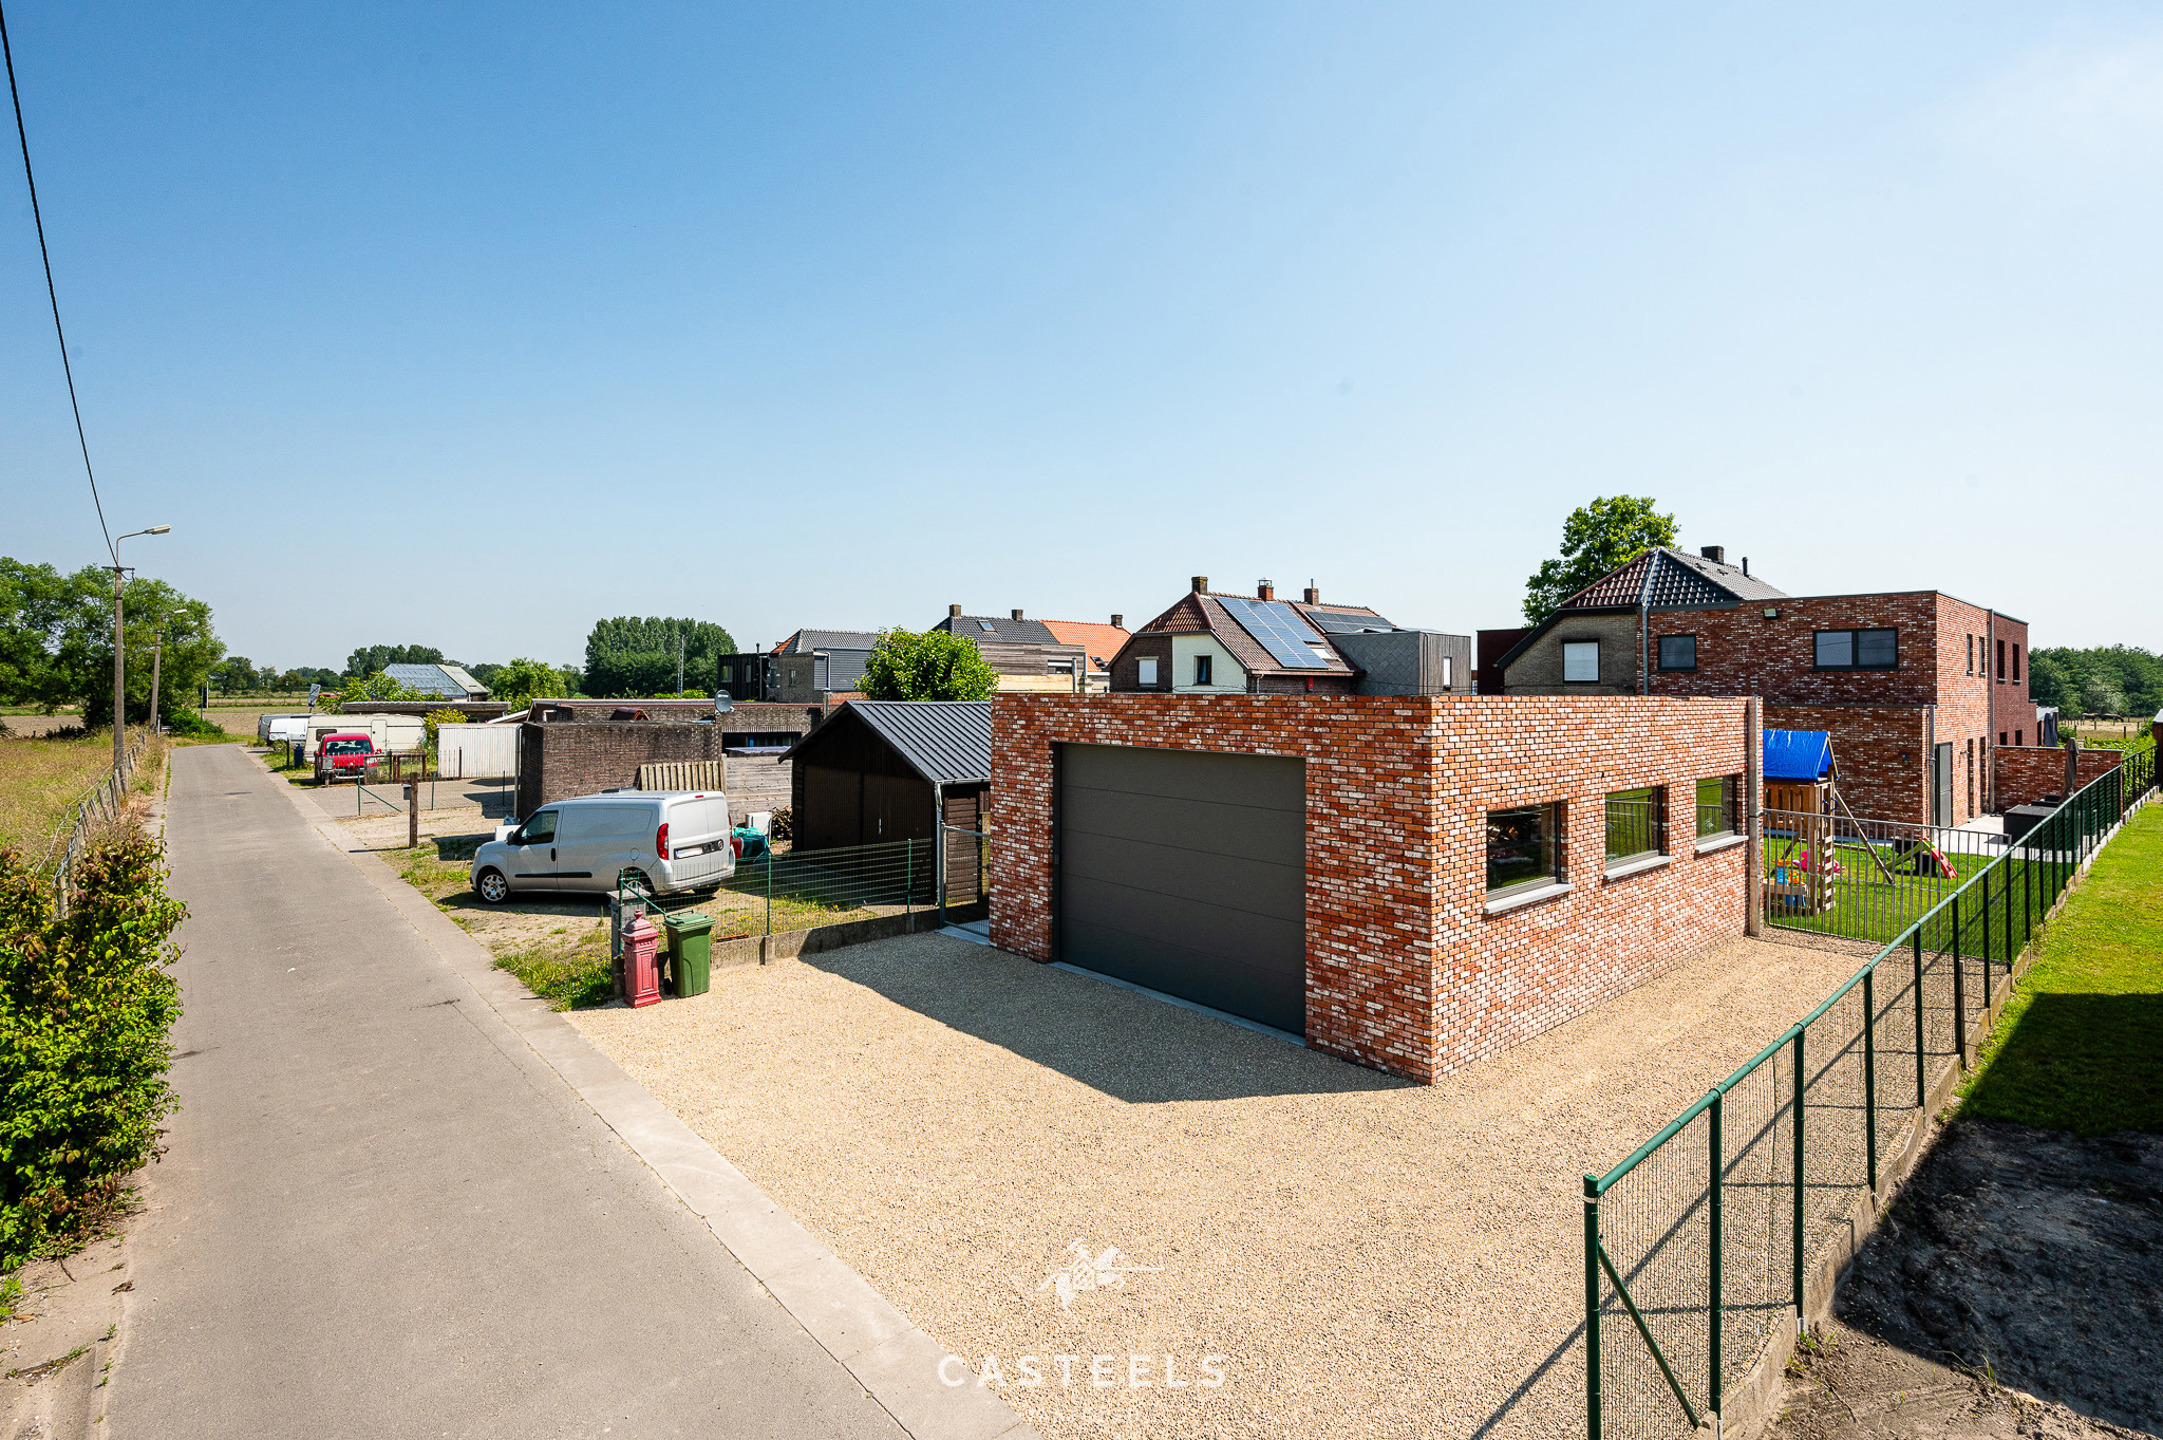 Afbeelding Prachtige BEN-woning in Belzele dorp te koop - Casteels Vastgoed